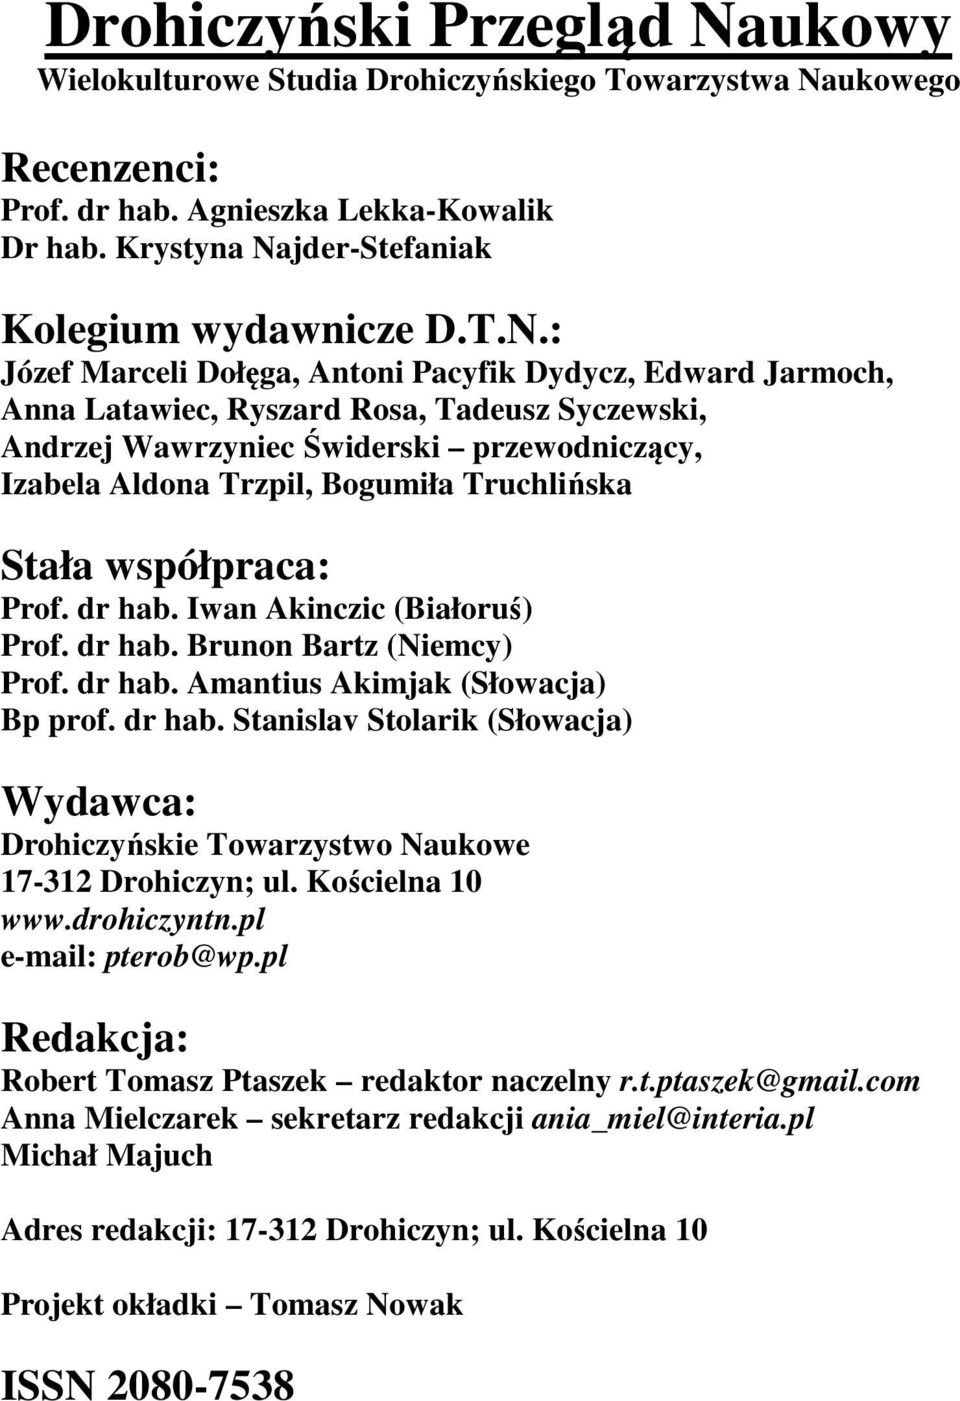 ukowego Recenzenci: Prof. dr hab. Agnieszka Lekka-Kowalik Dr hab. Krystyna Na